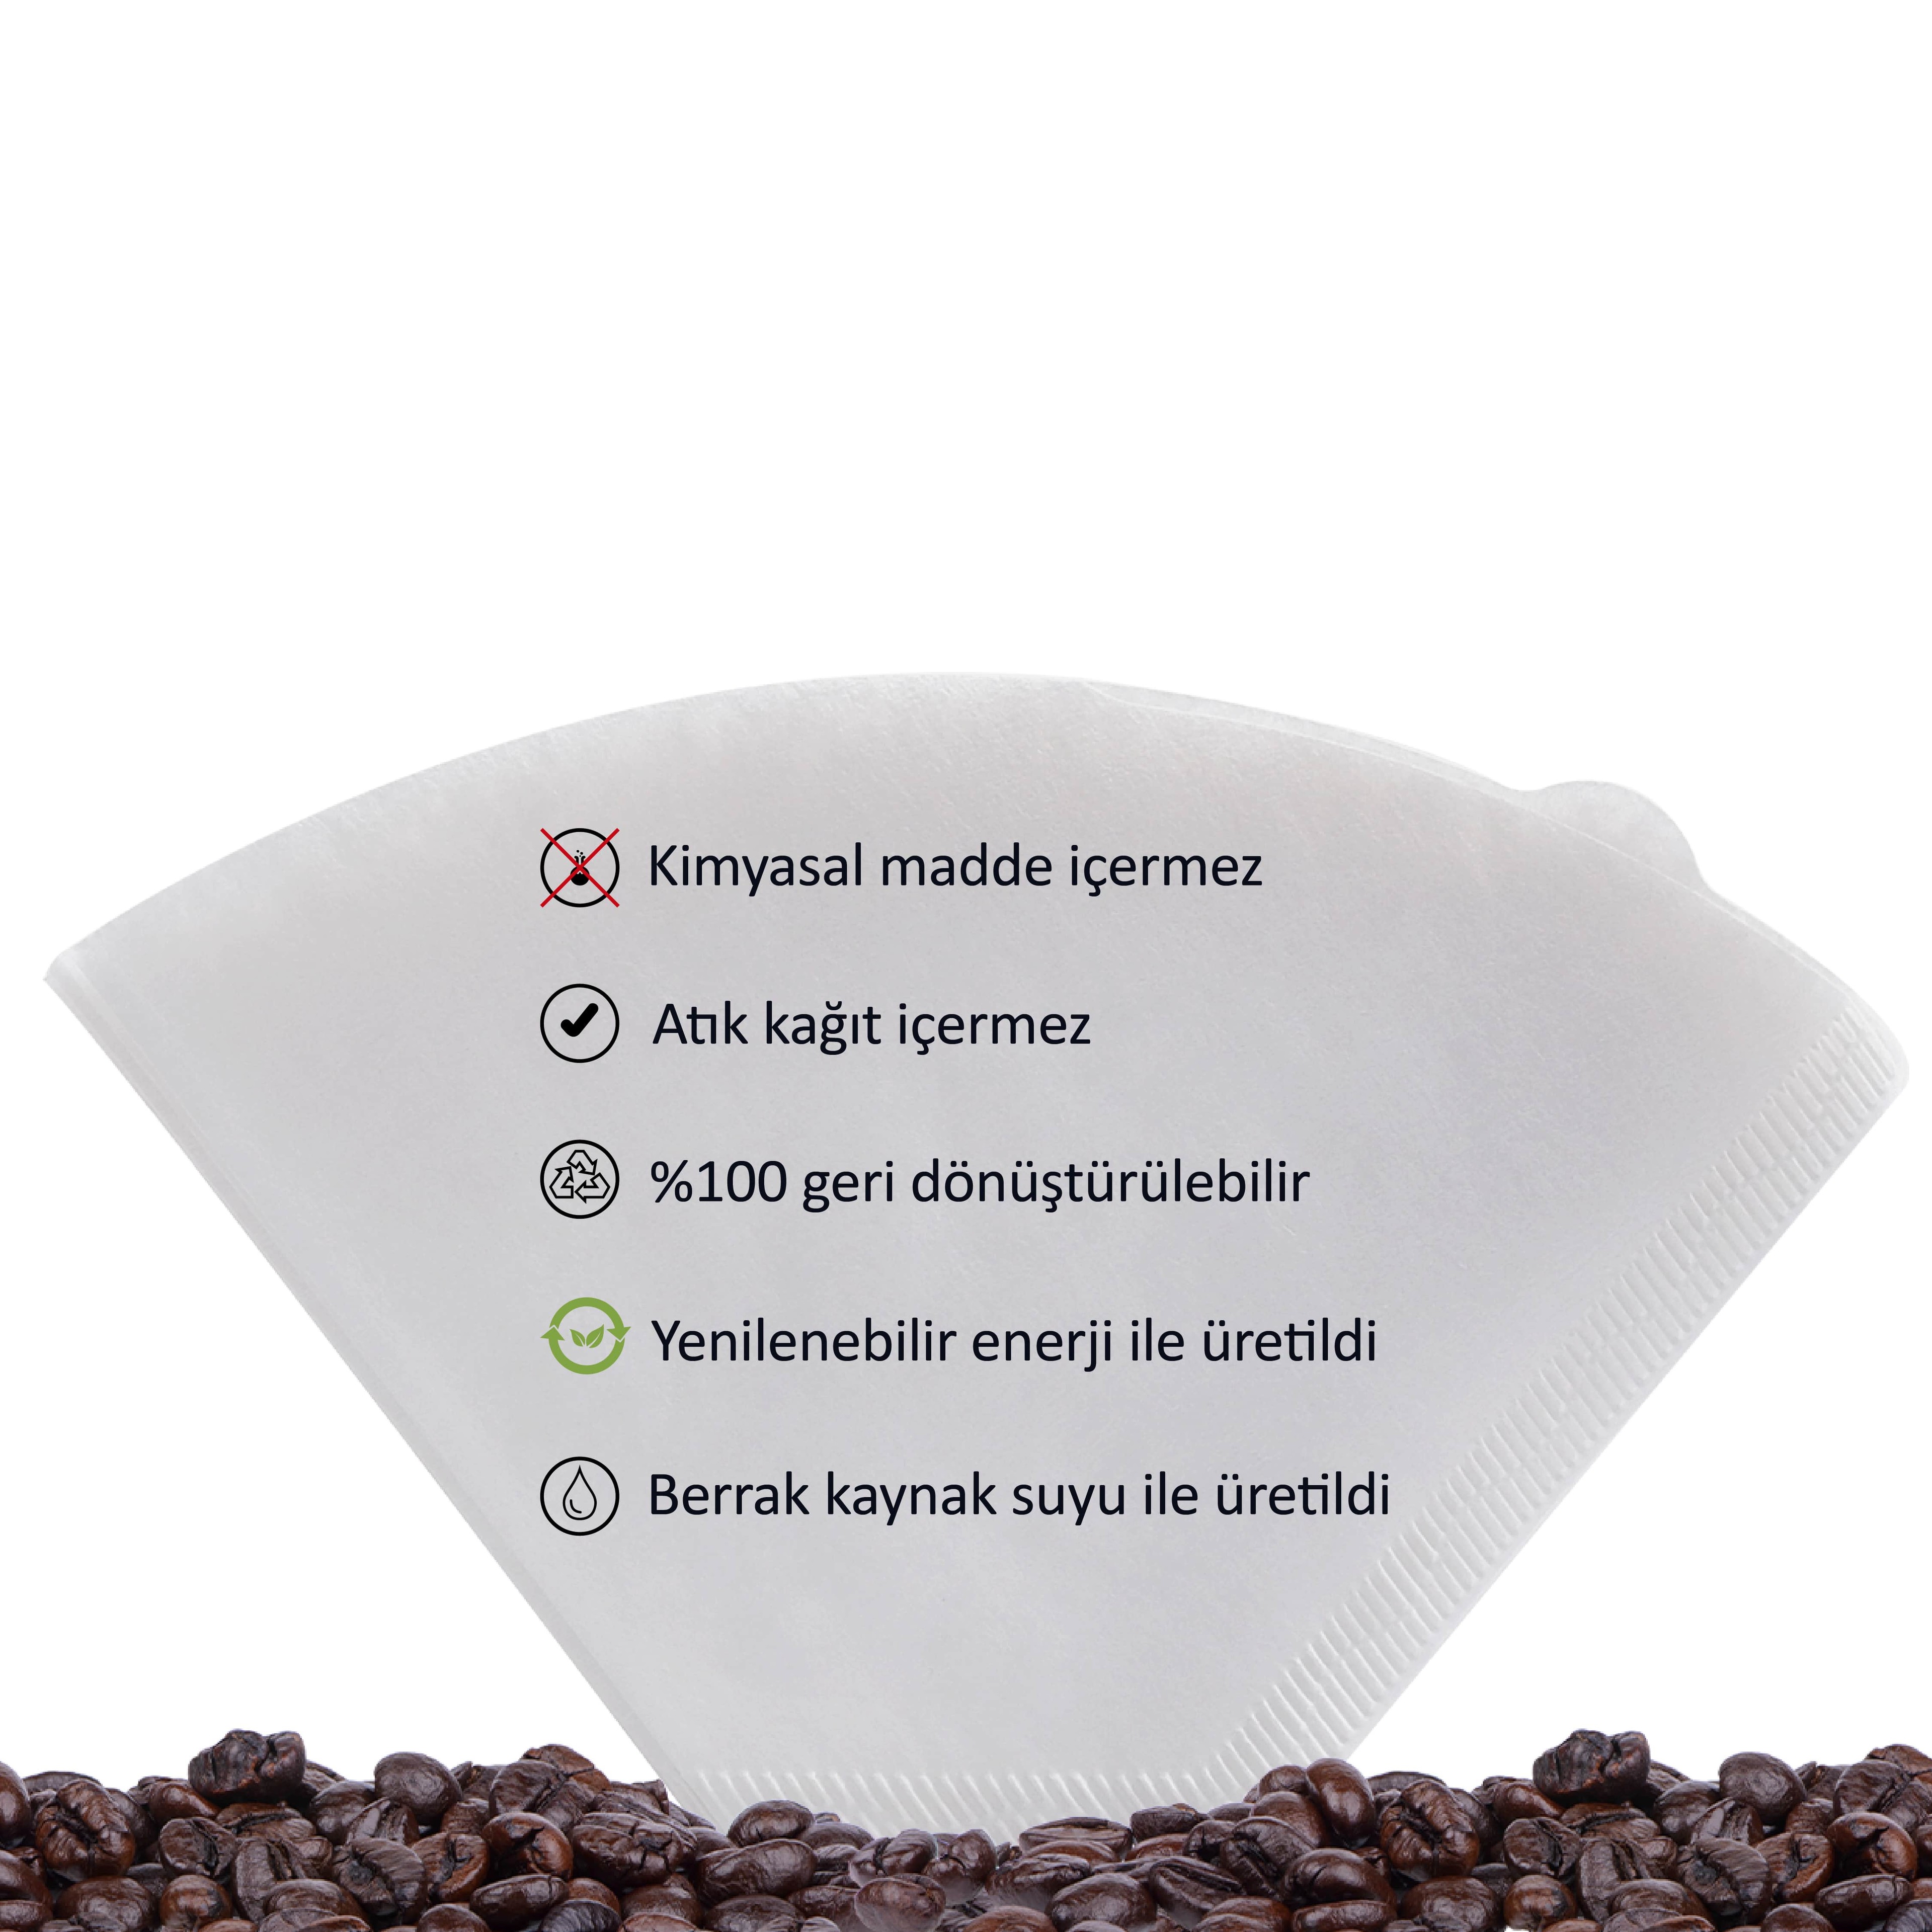 COOK Premium Filtre Kahve Kağıdı